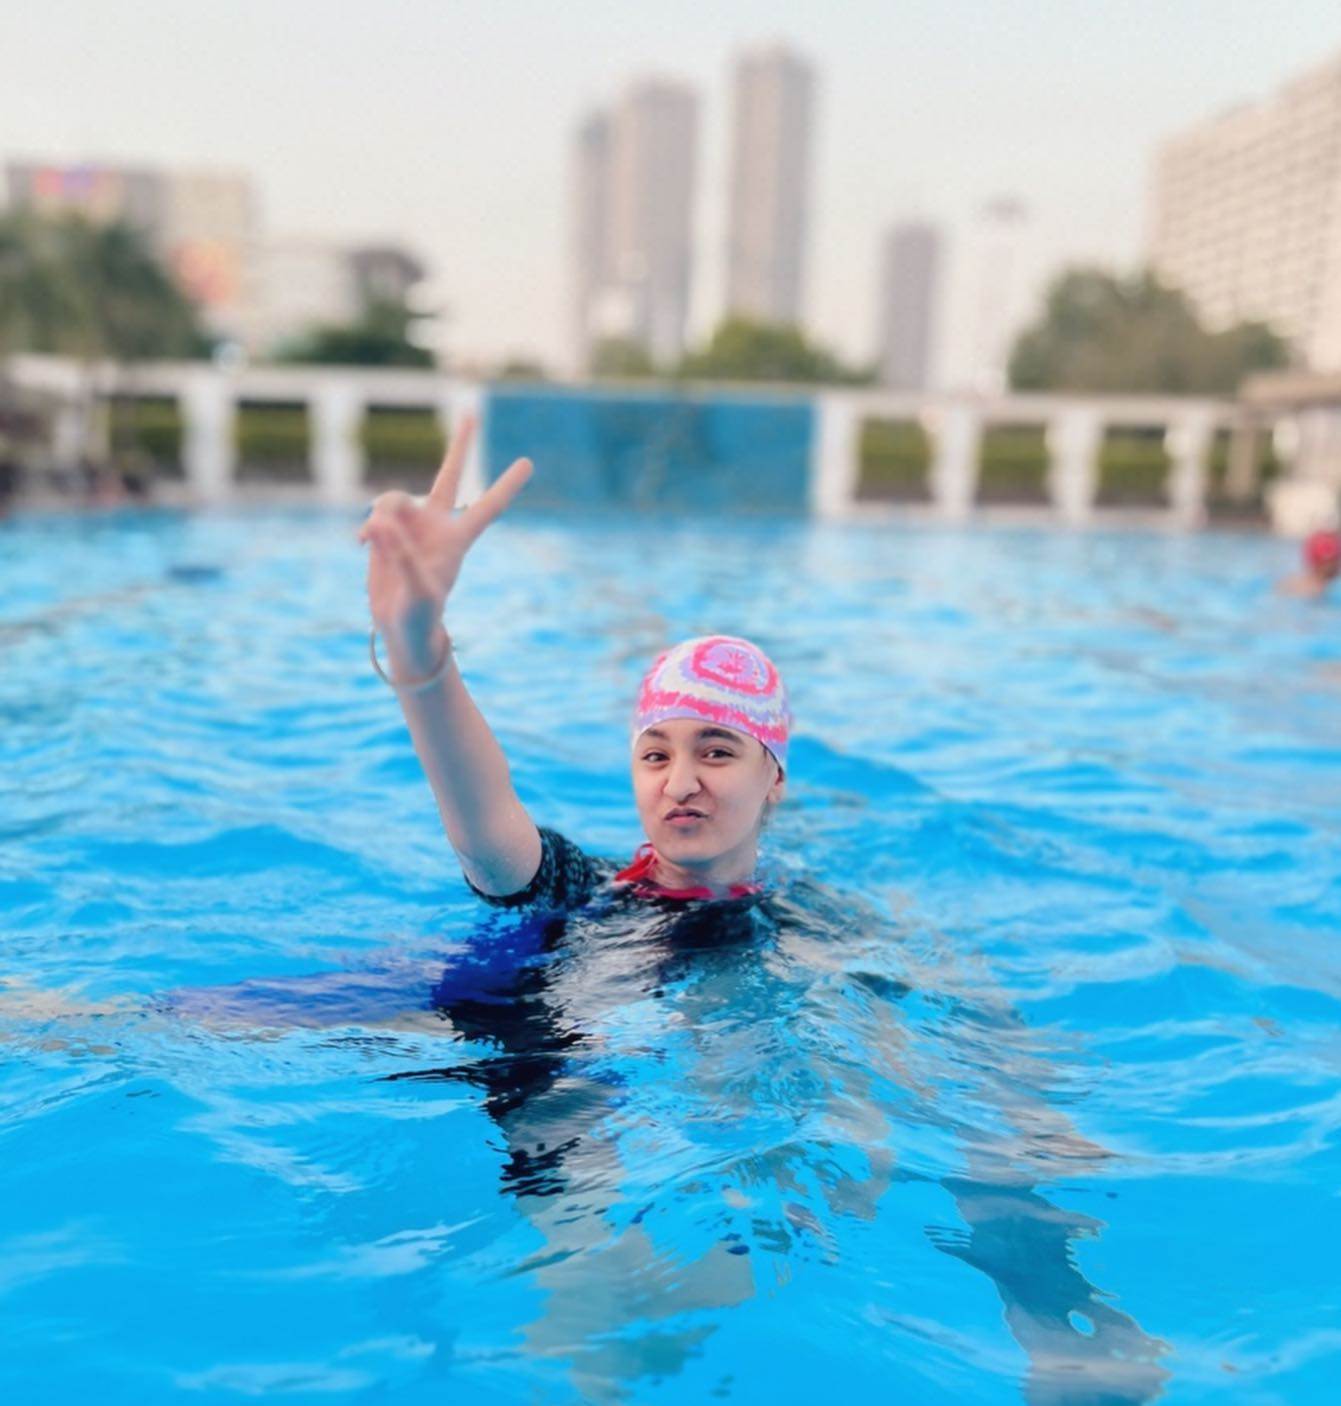 A photo of Naisha Khanna while swimming